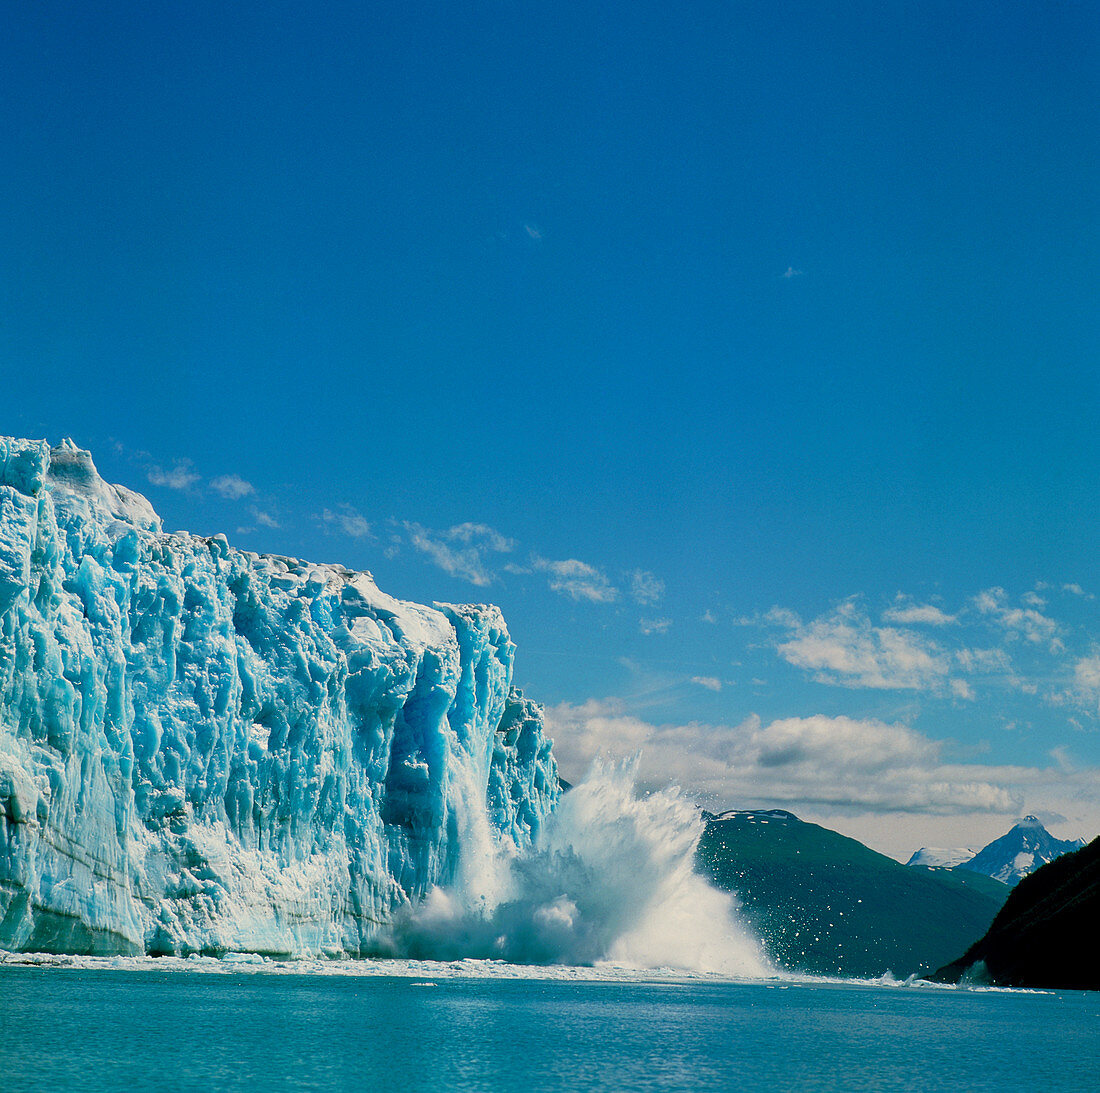 Hubbard glacier calving as it reaches the sea